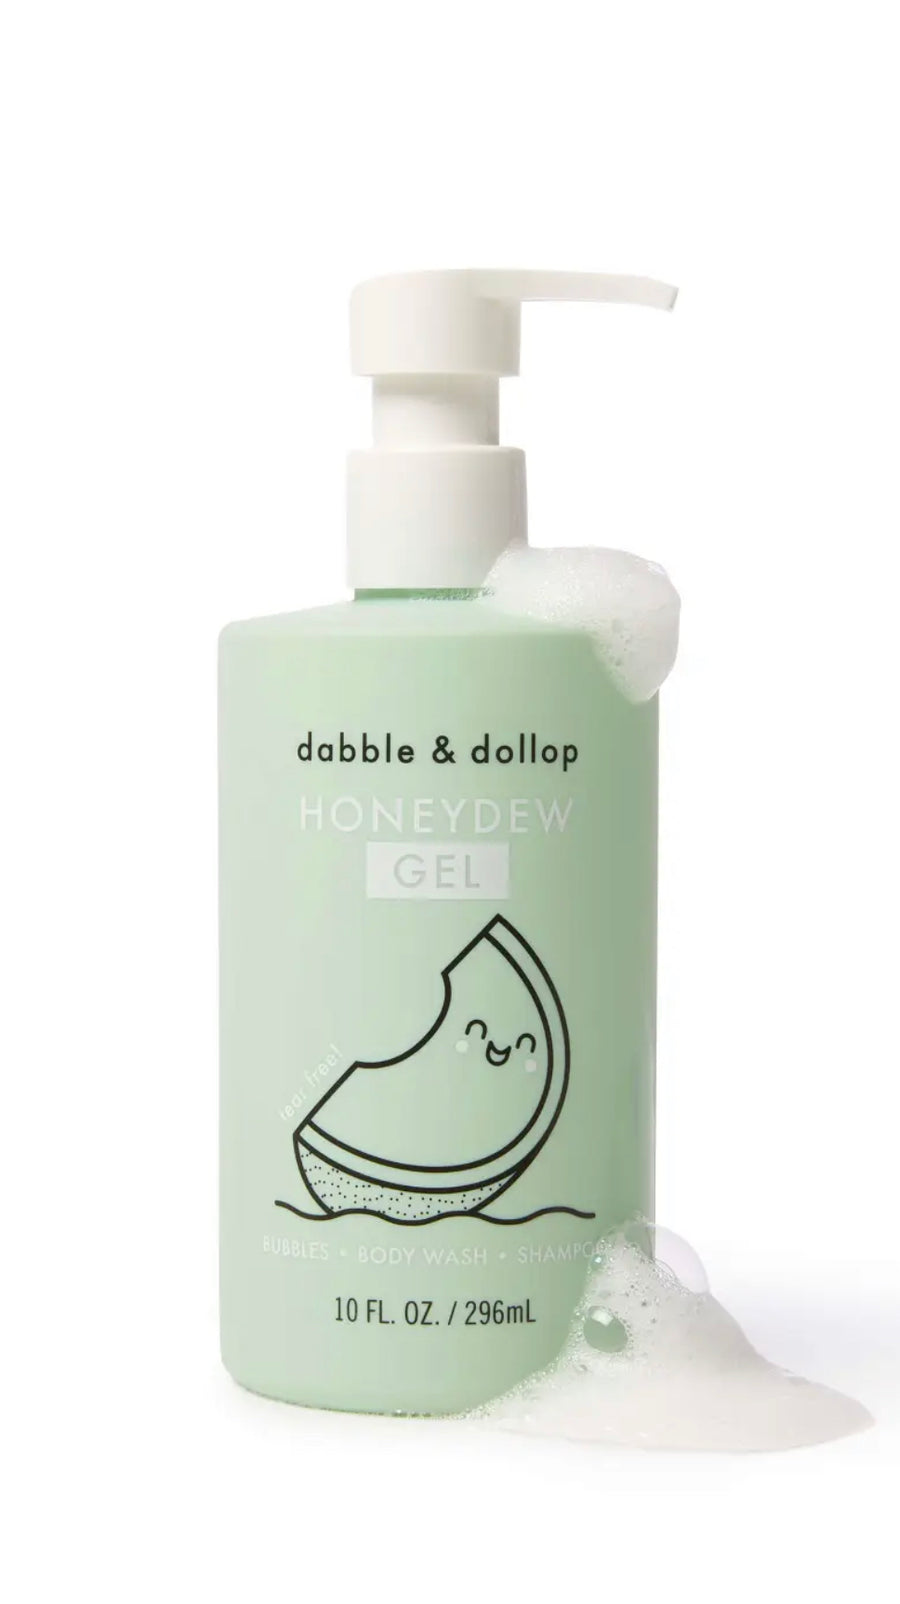 Shampoo + Bubble Bath + Body Wash Honeydew